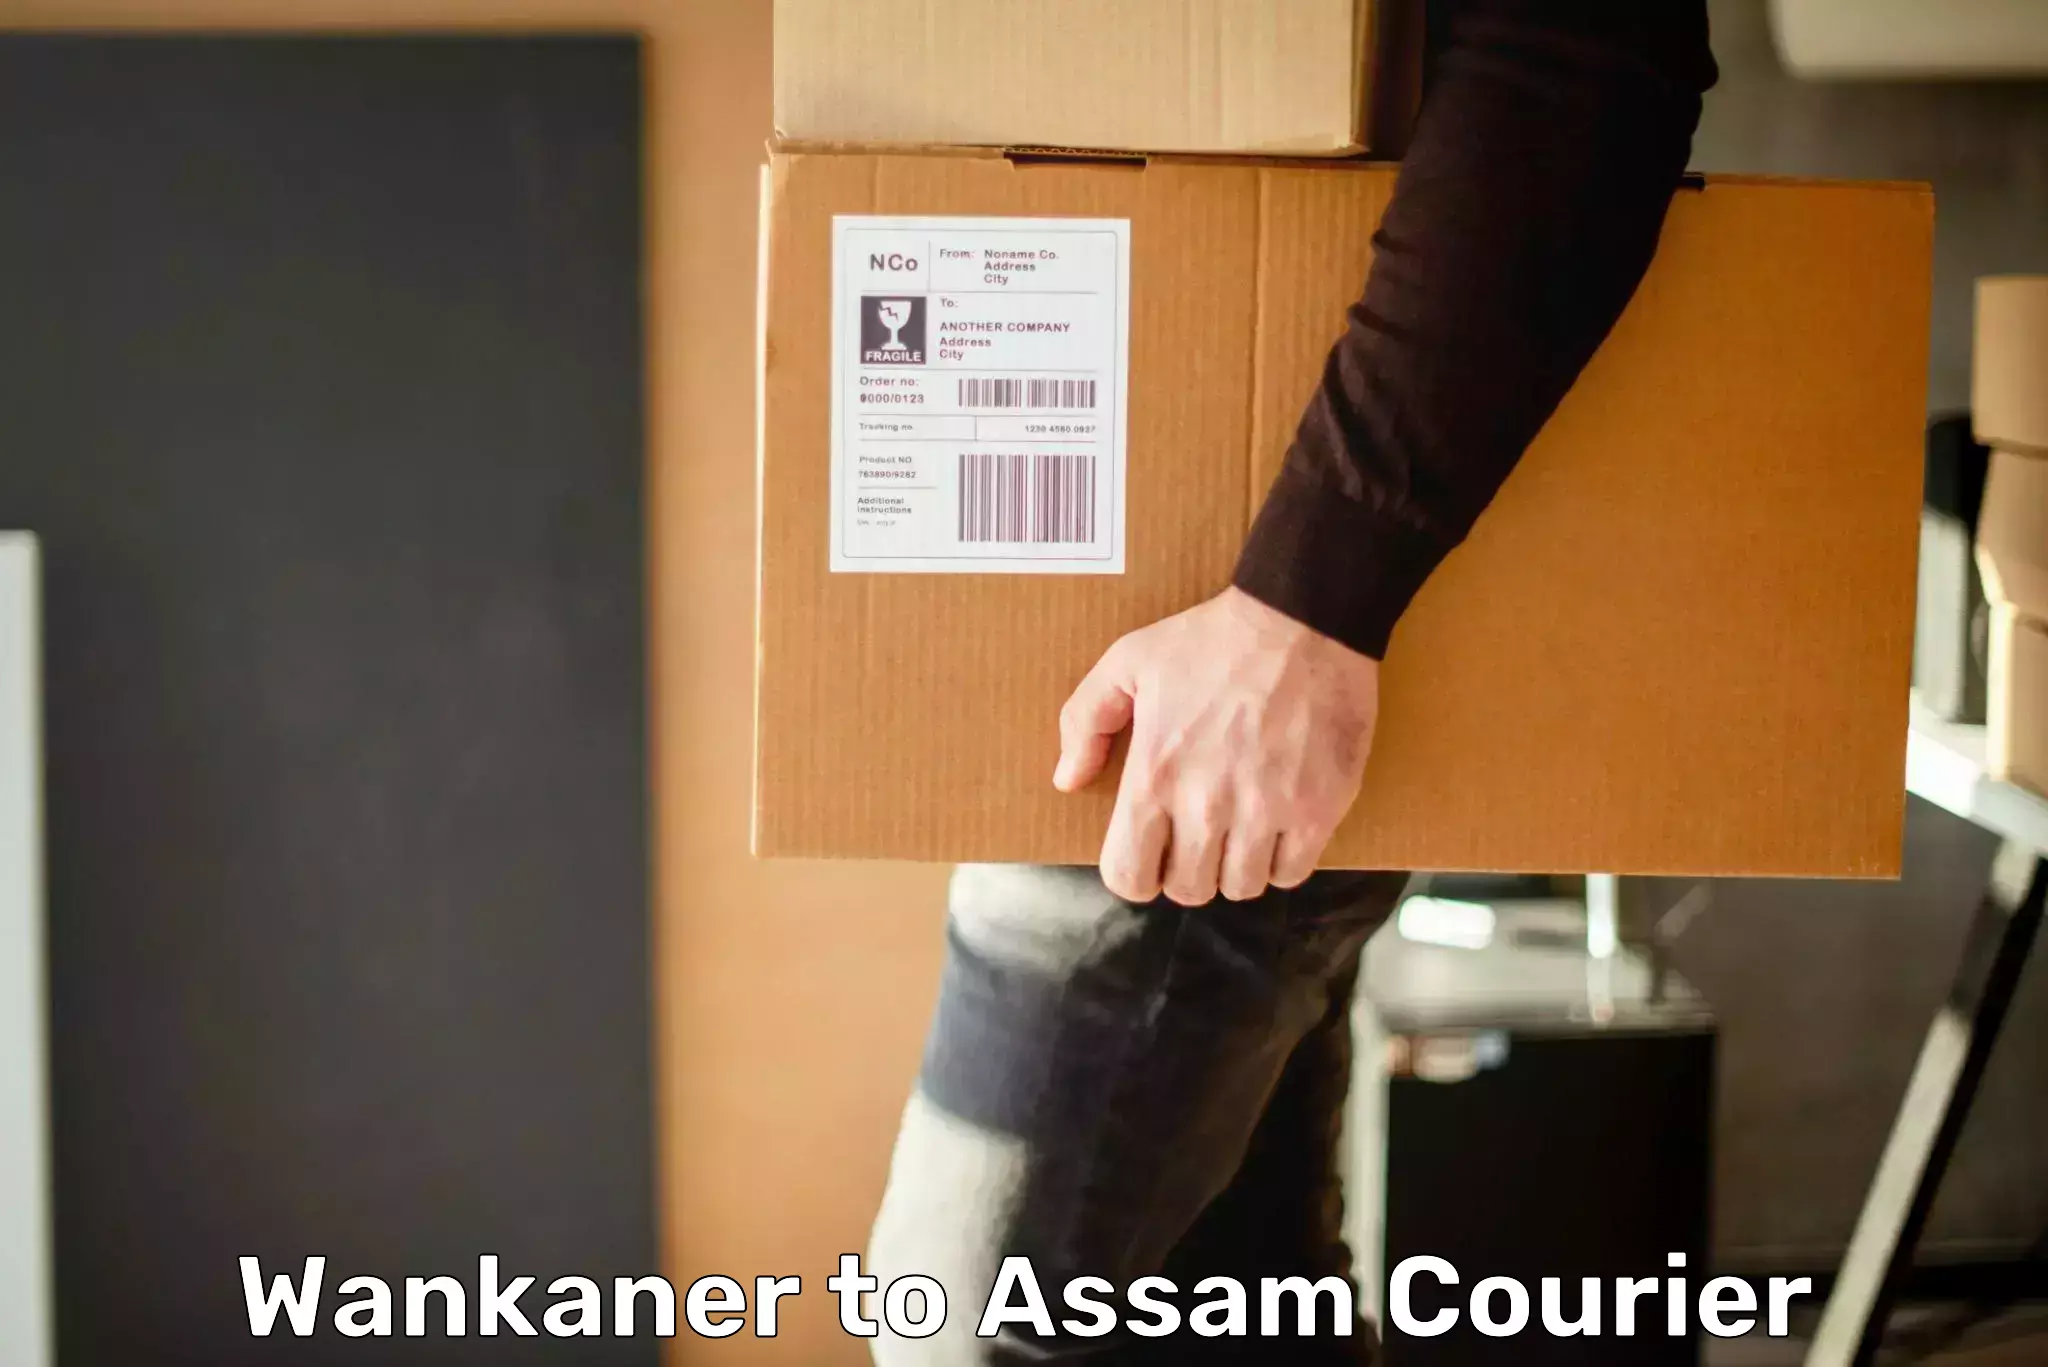 Global logistics network Wankaner to Amoni